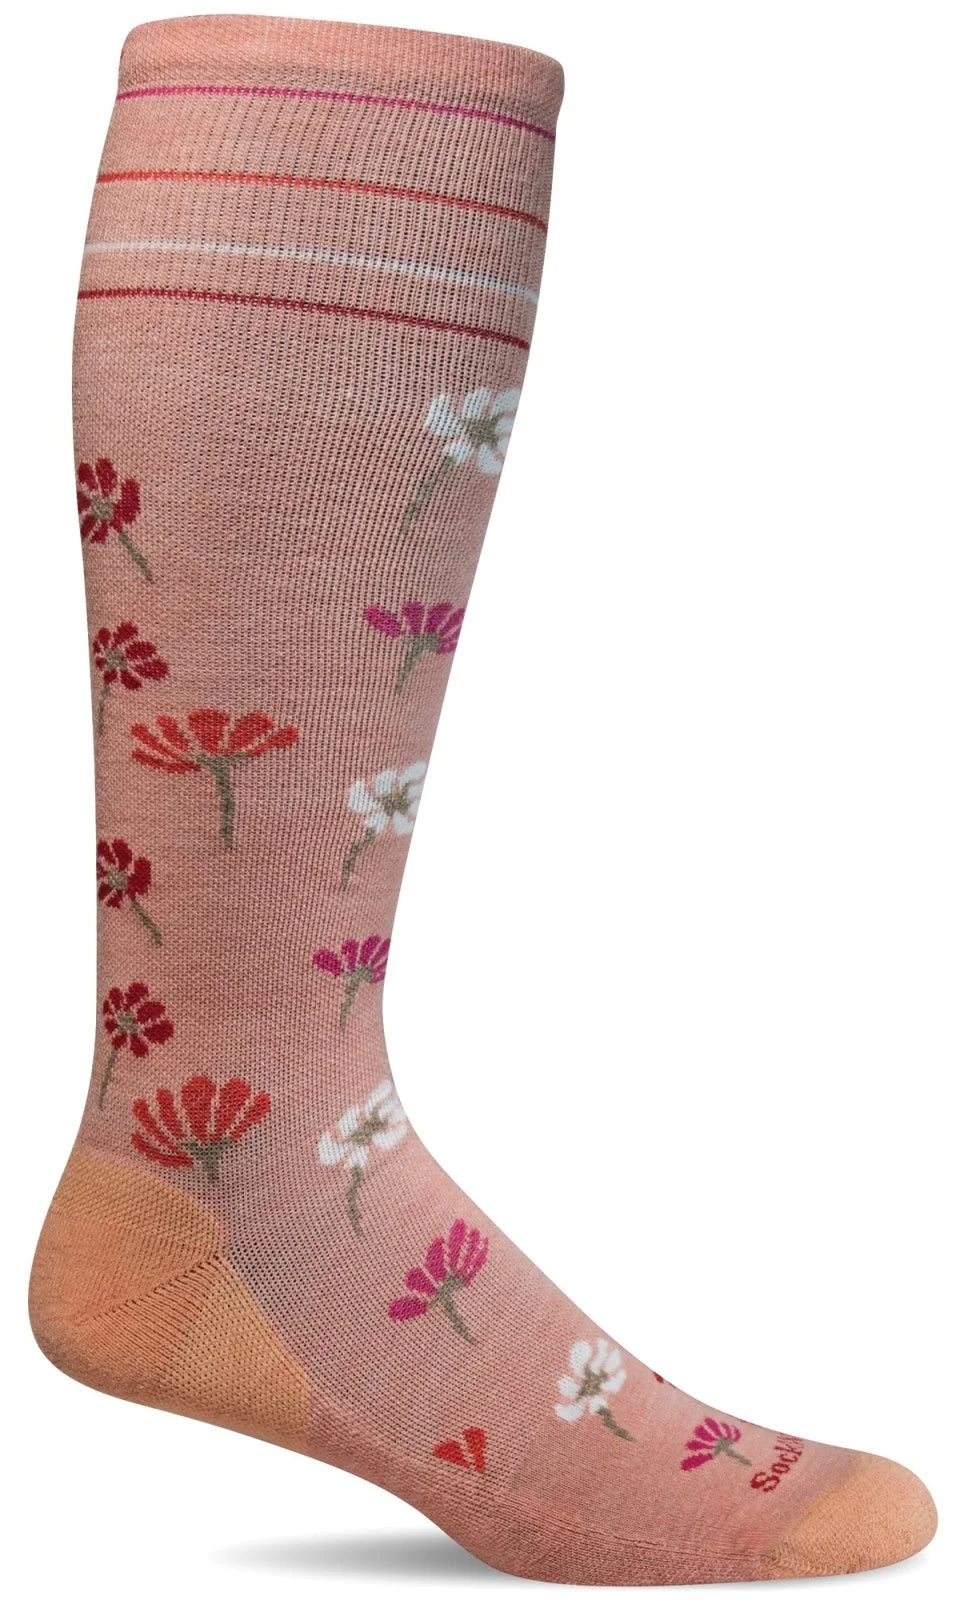 Women's Field Flower Compression Sock, 15-20 mmHg